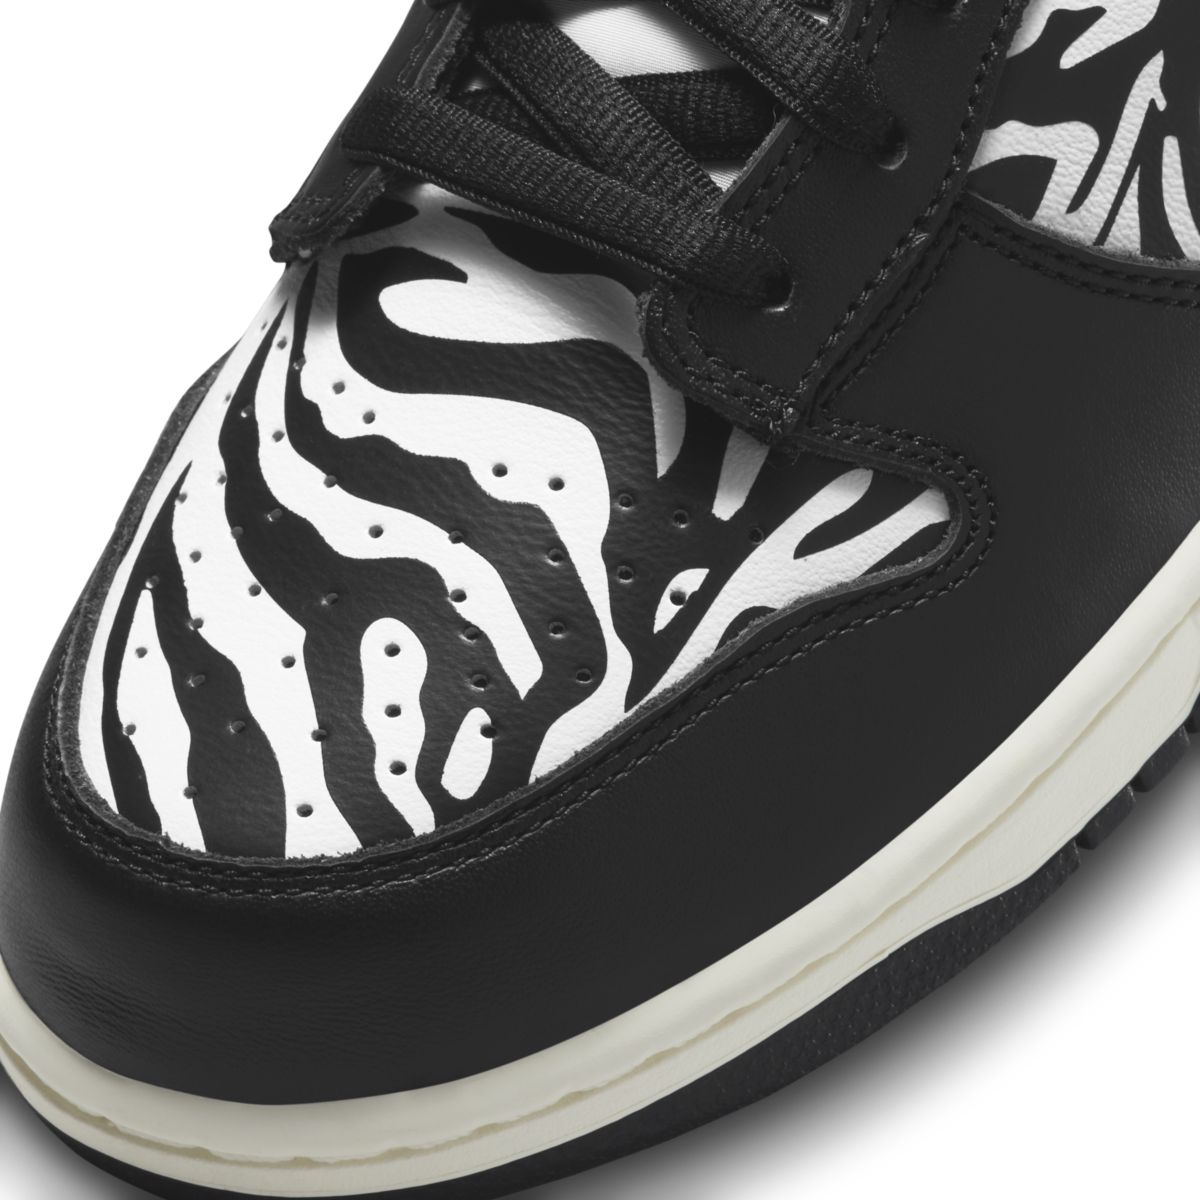 Quartersnacks x Nike SB Dunk Low Zebra DM3510-001 7